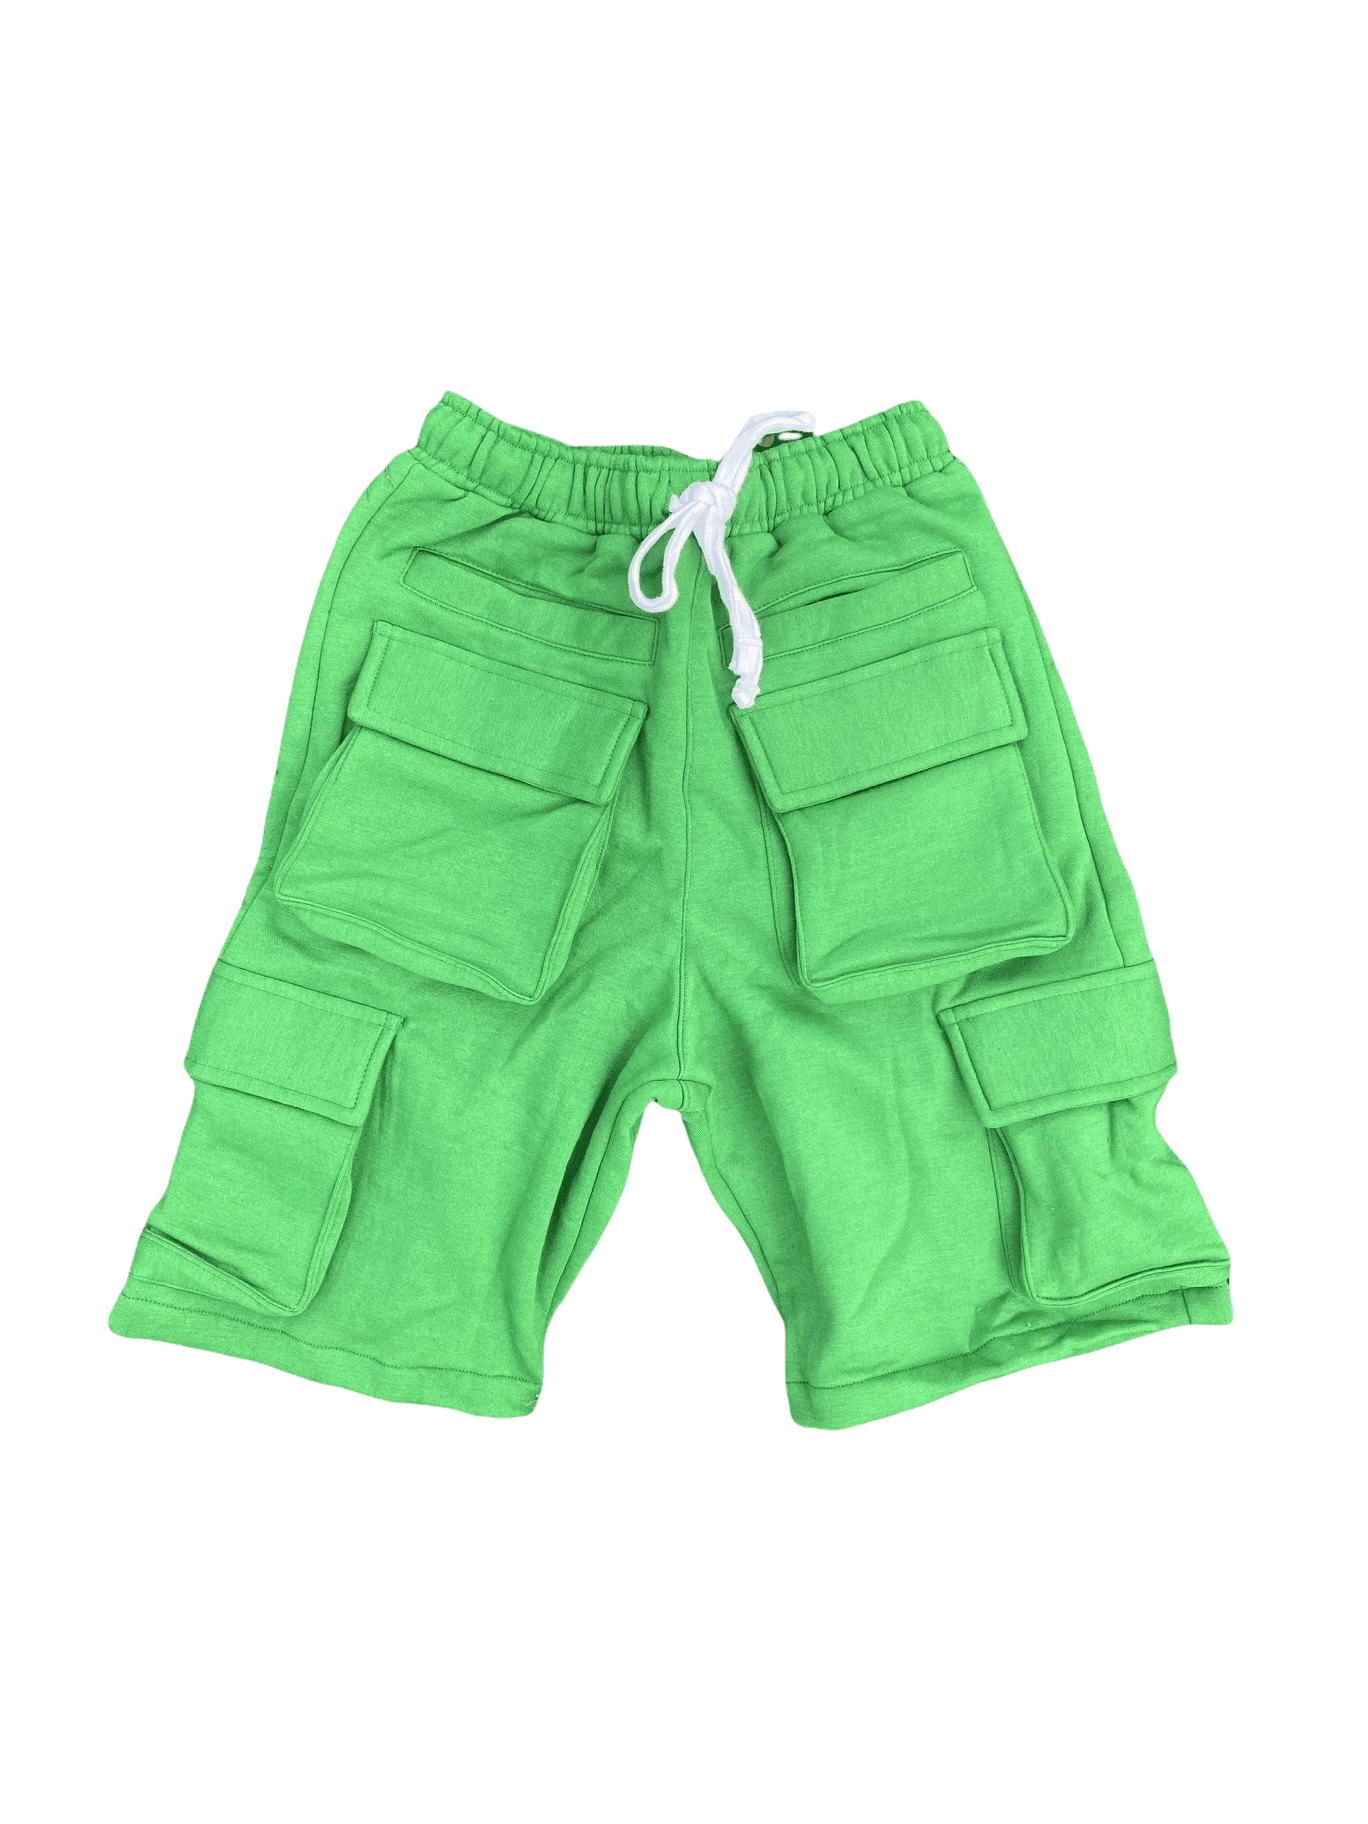 HOLLYWOODHUNNA Green Cargo Shorts